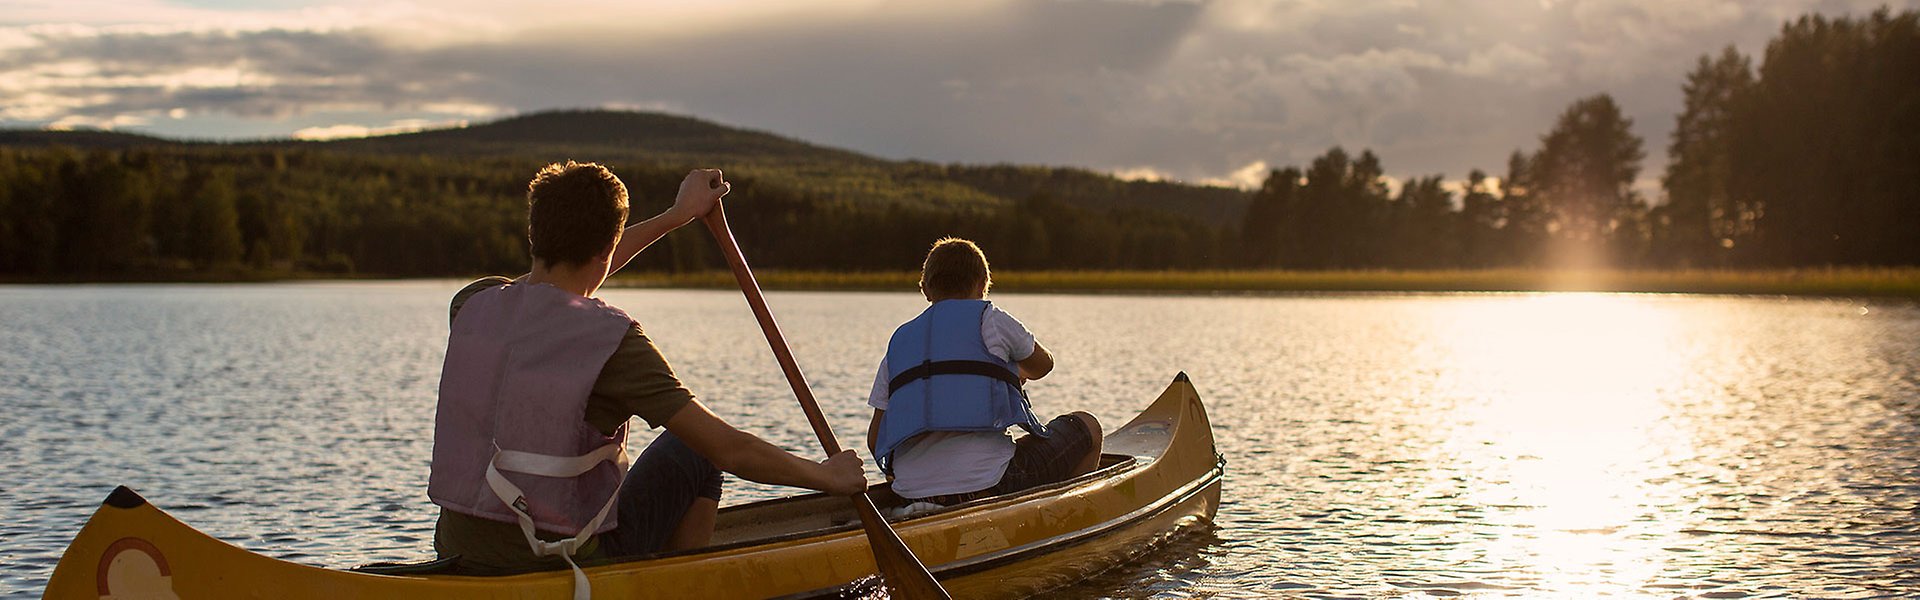 Två personer paddlar kanot på en sjö